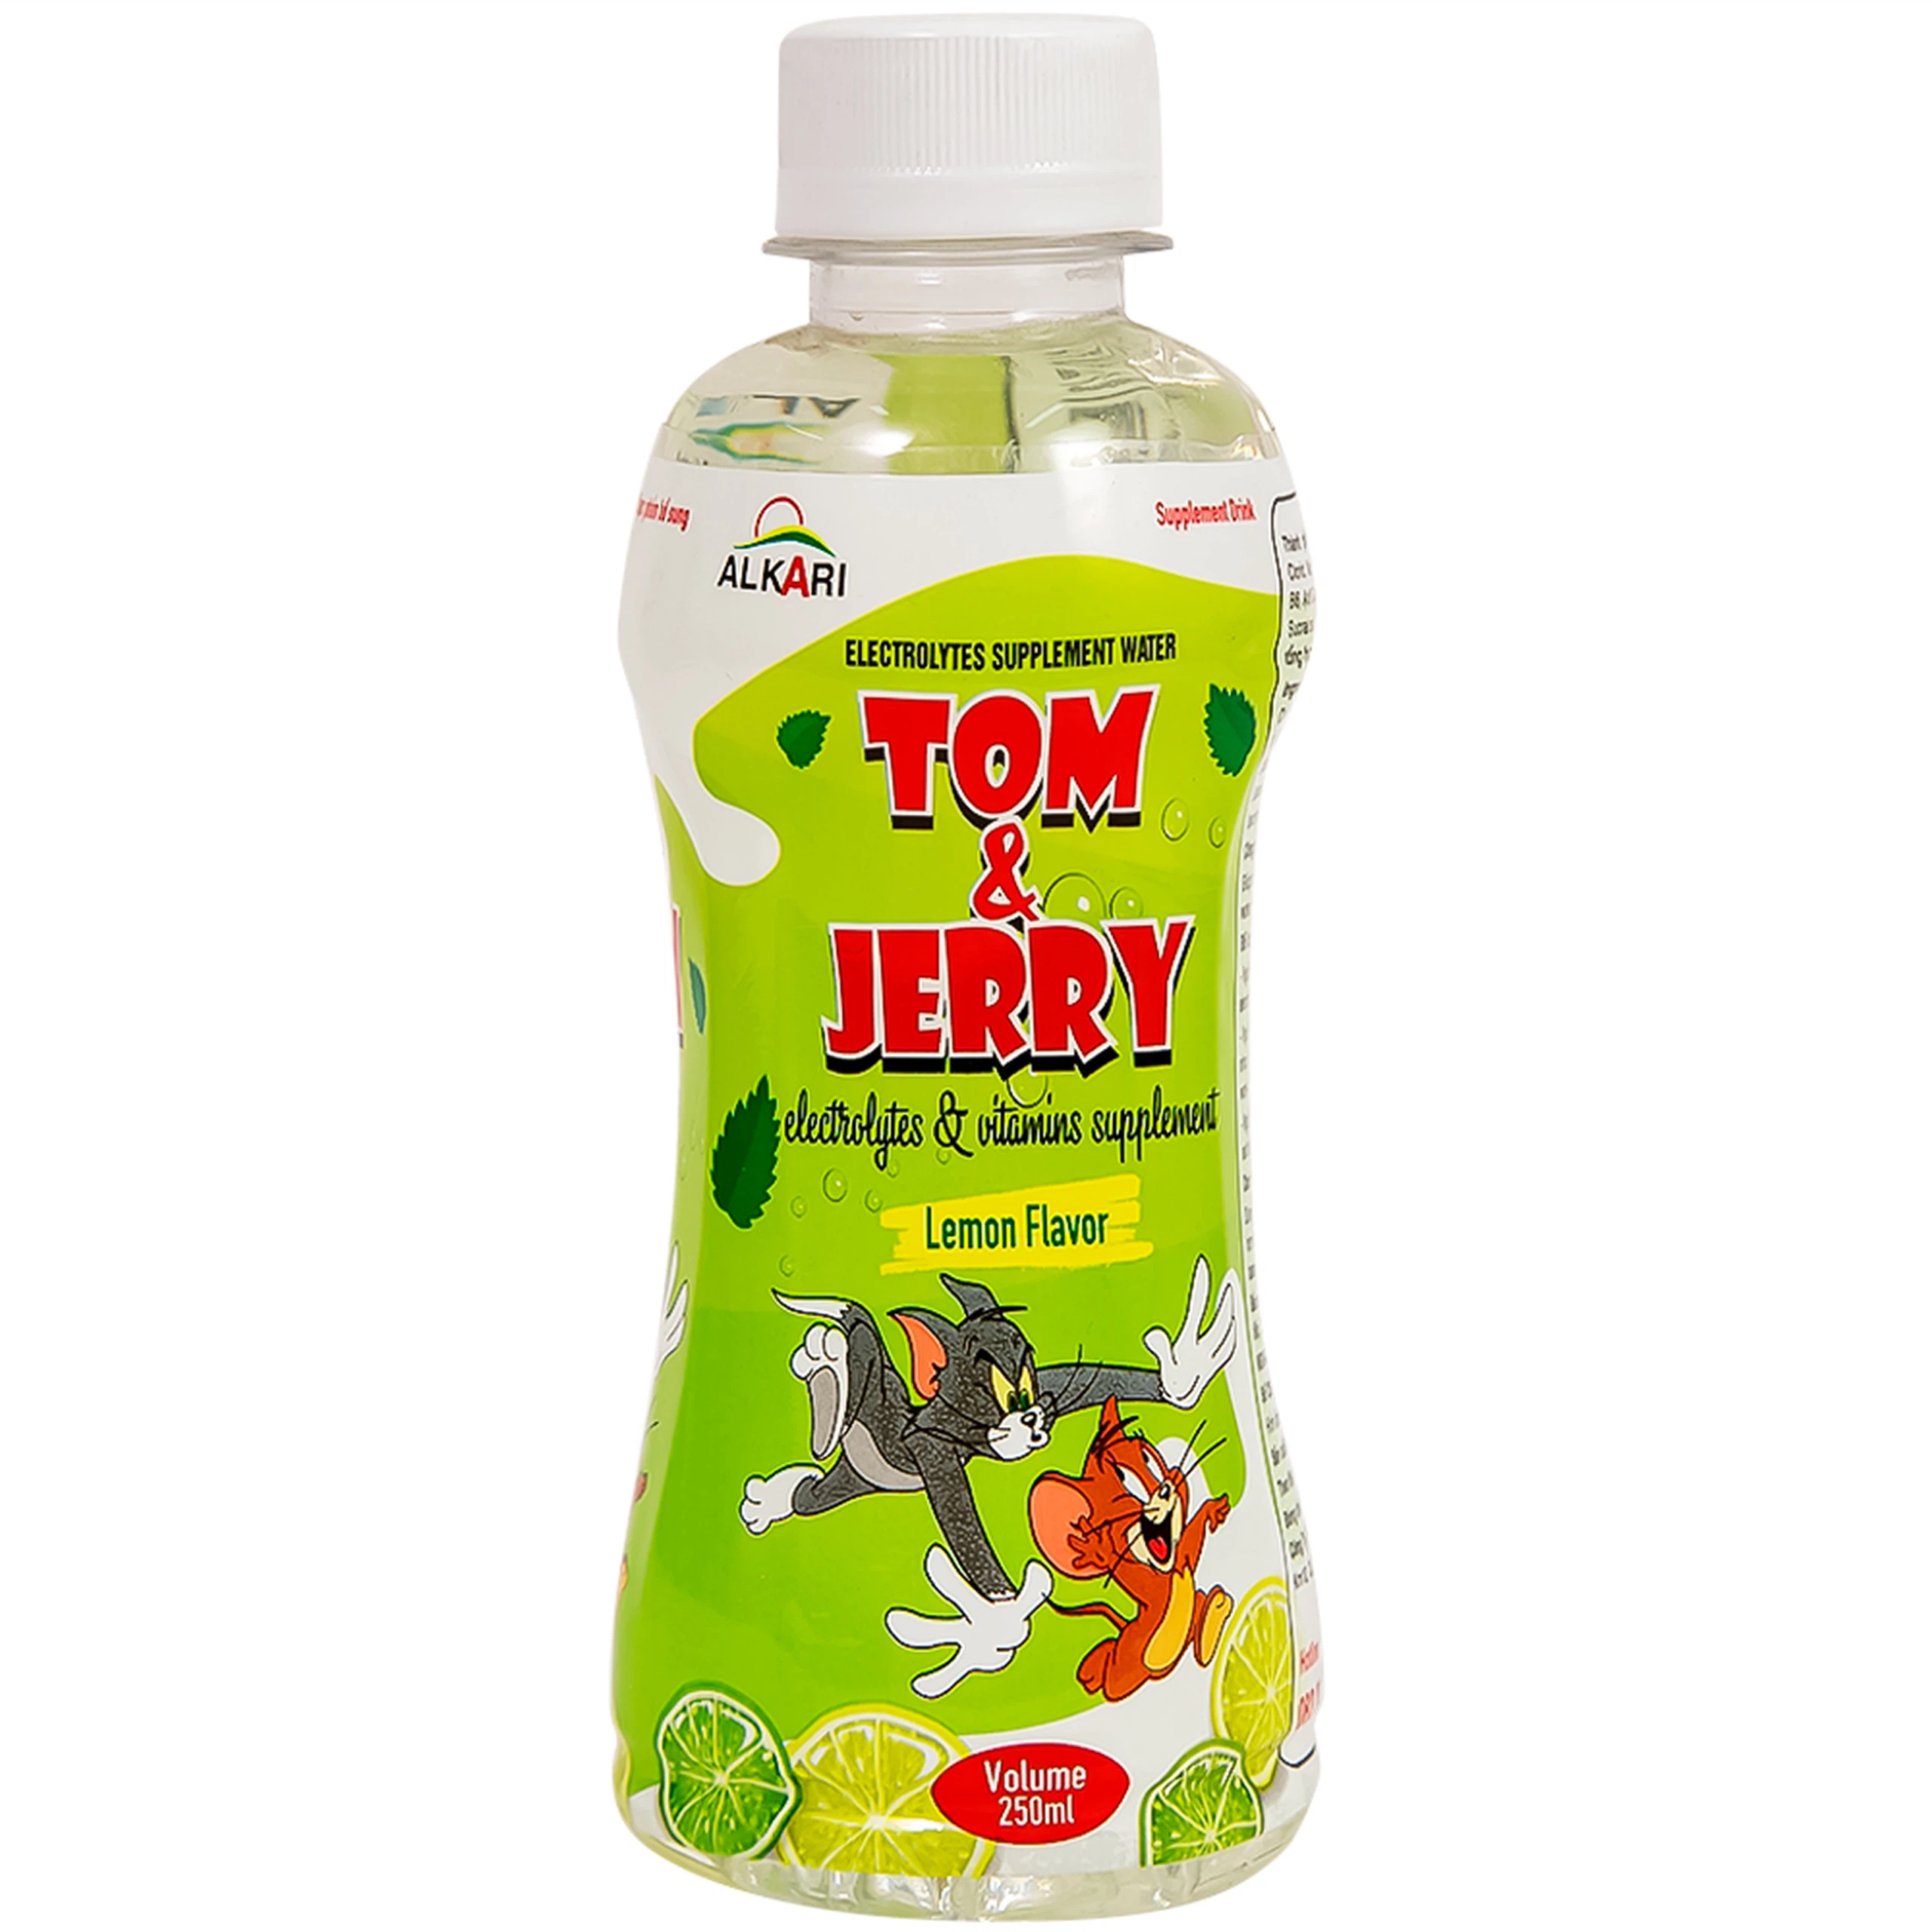 Nước bù điện giải Tom Và Jerry vị Chanh cung cấp năng lượng, vitamin cần thiết (250ml)